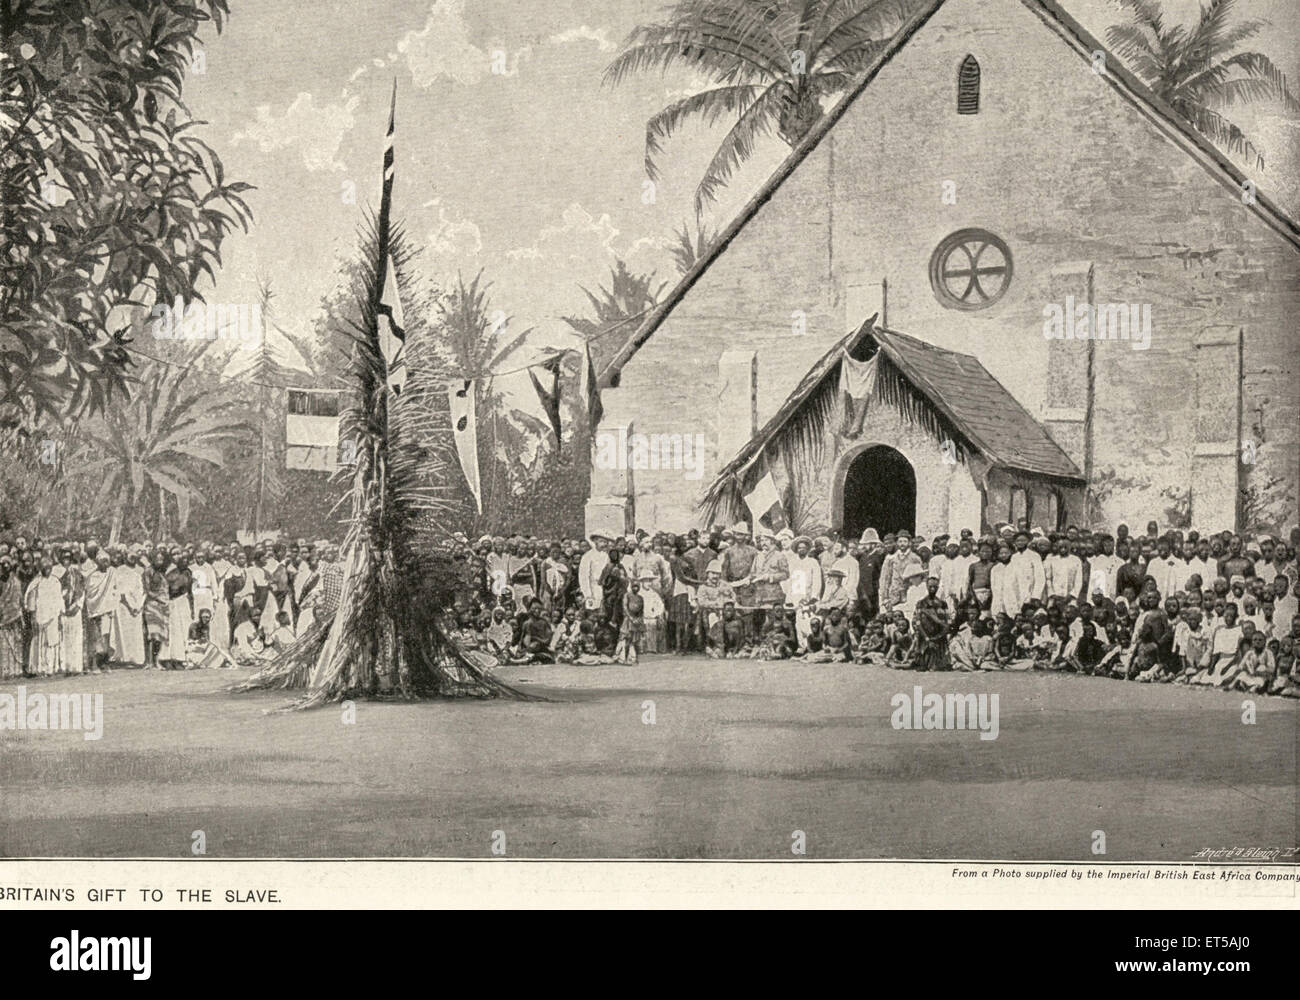 Regalo de Britains al esclavo ; Africa ; grabado de la vieja vendimia 1800s Foto de stock